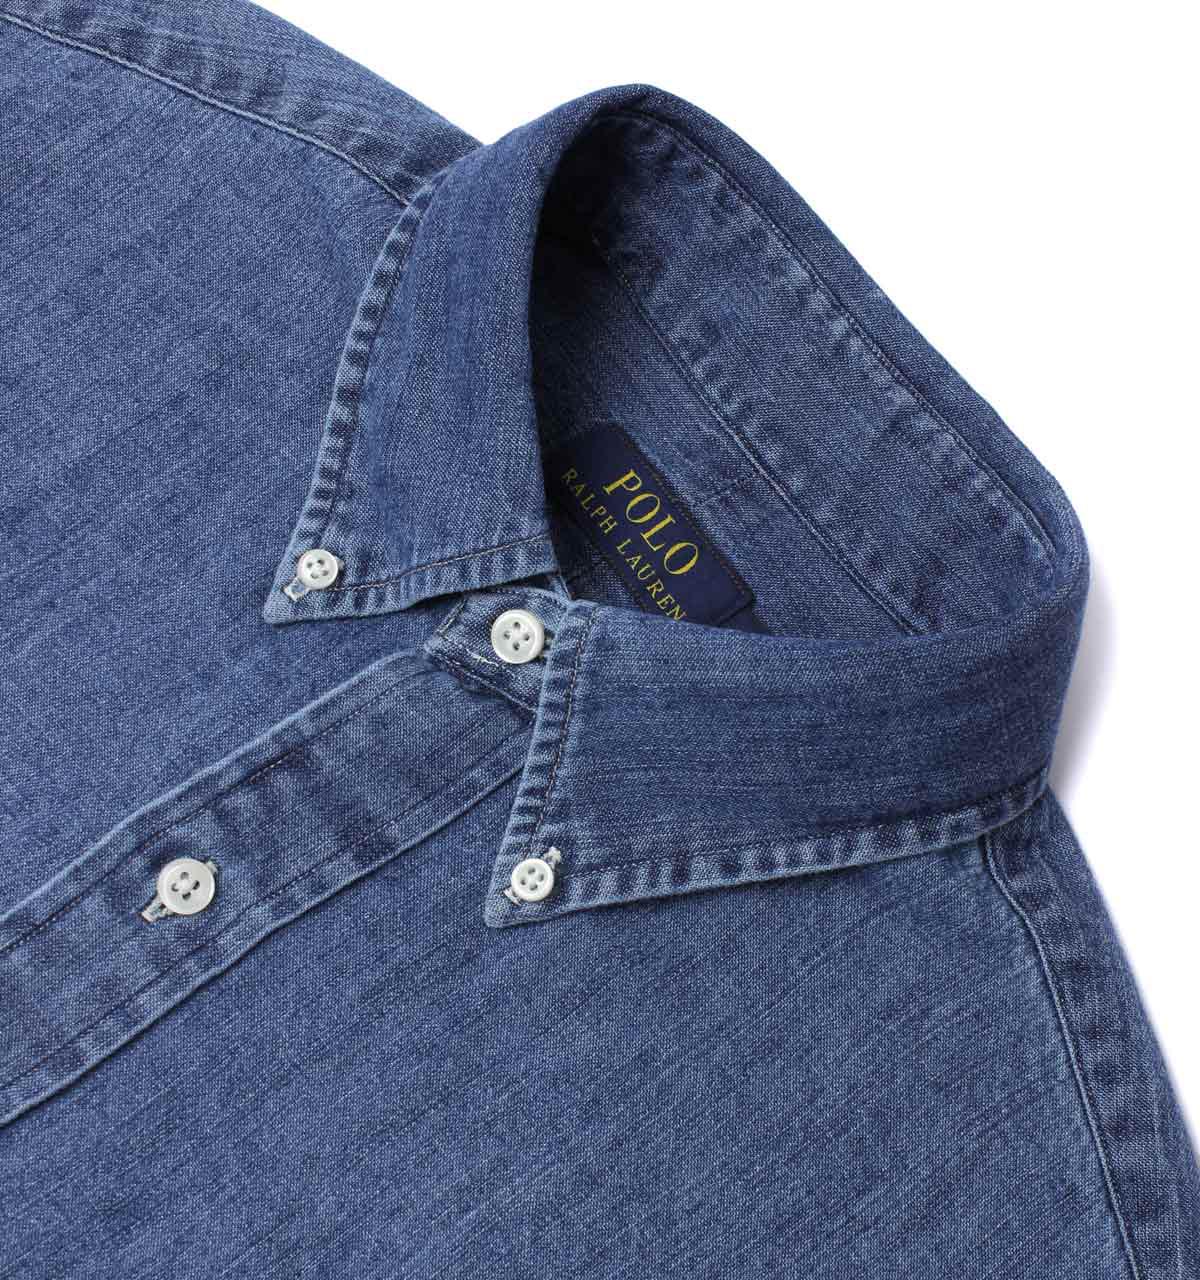 Polo Ralph Lauren Dark Wash Denim Shirt in Blue for Men - Lyst